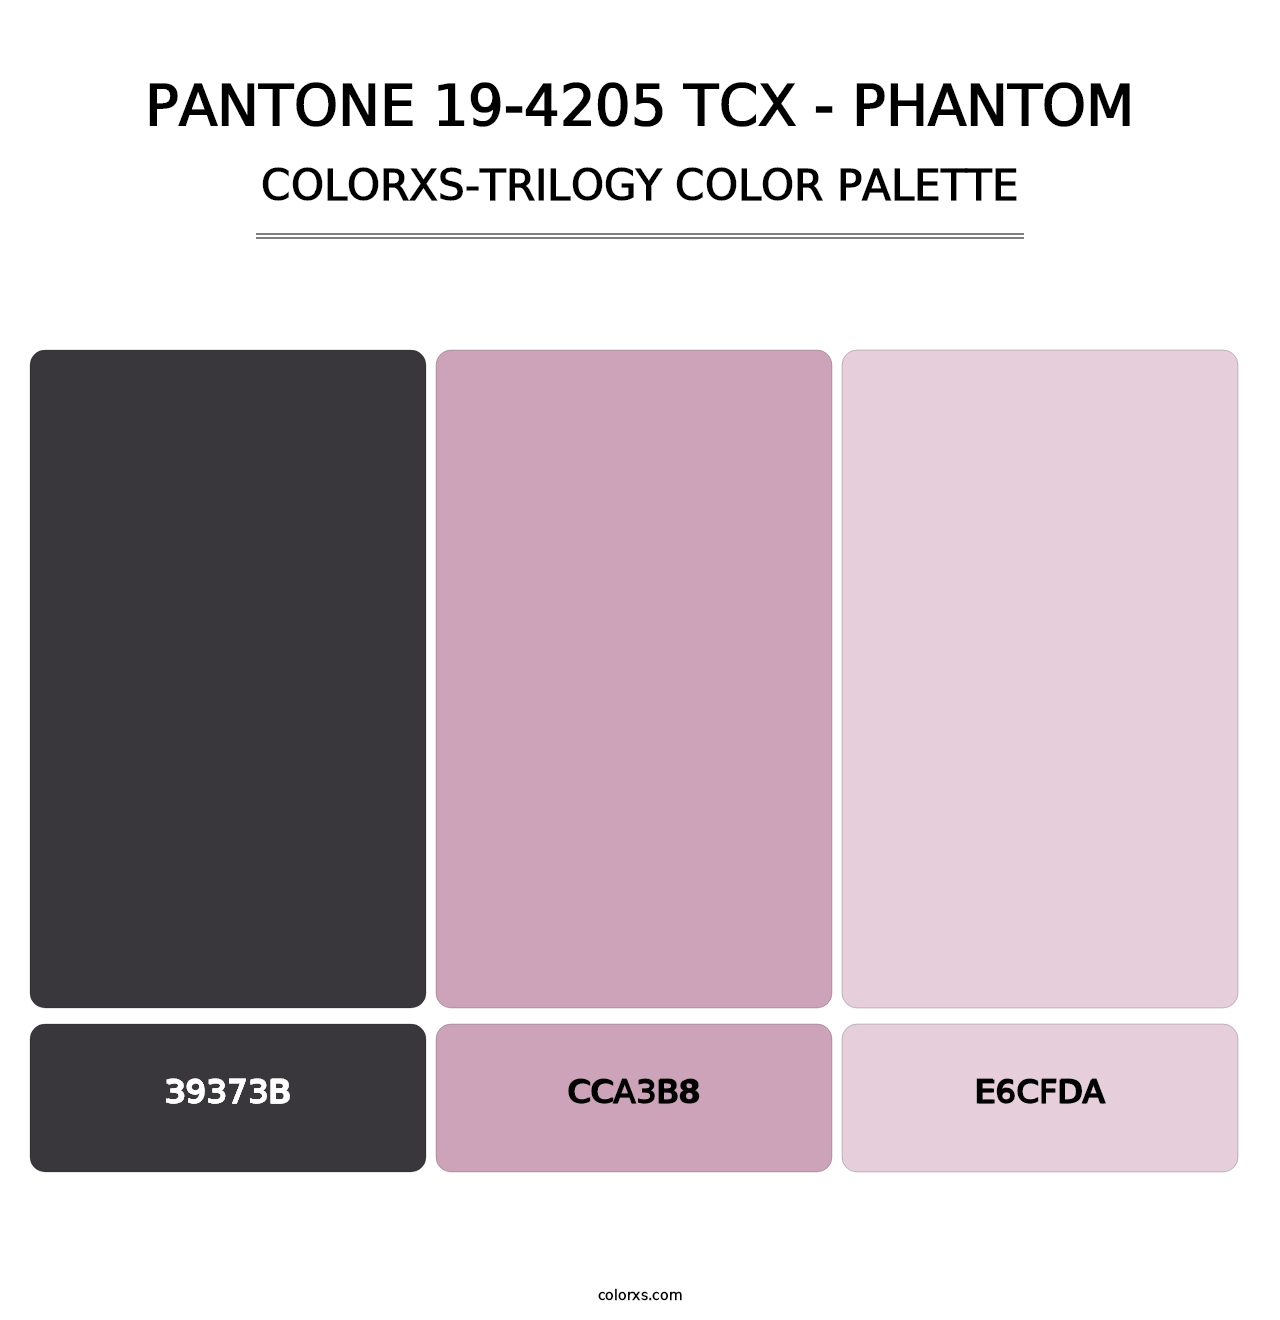 PANTONE 19-4205 TCX - Phantom - Colorxs Trilogy Palette